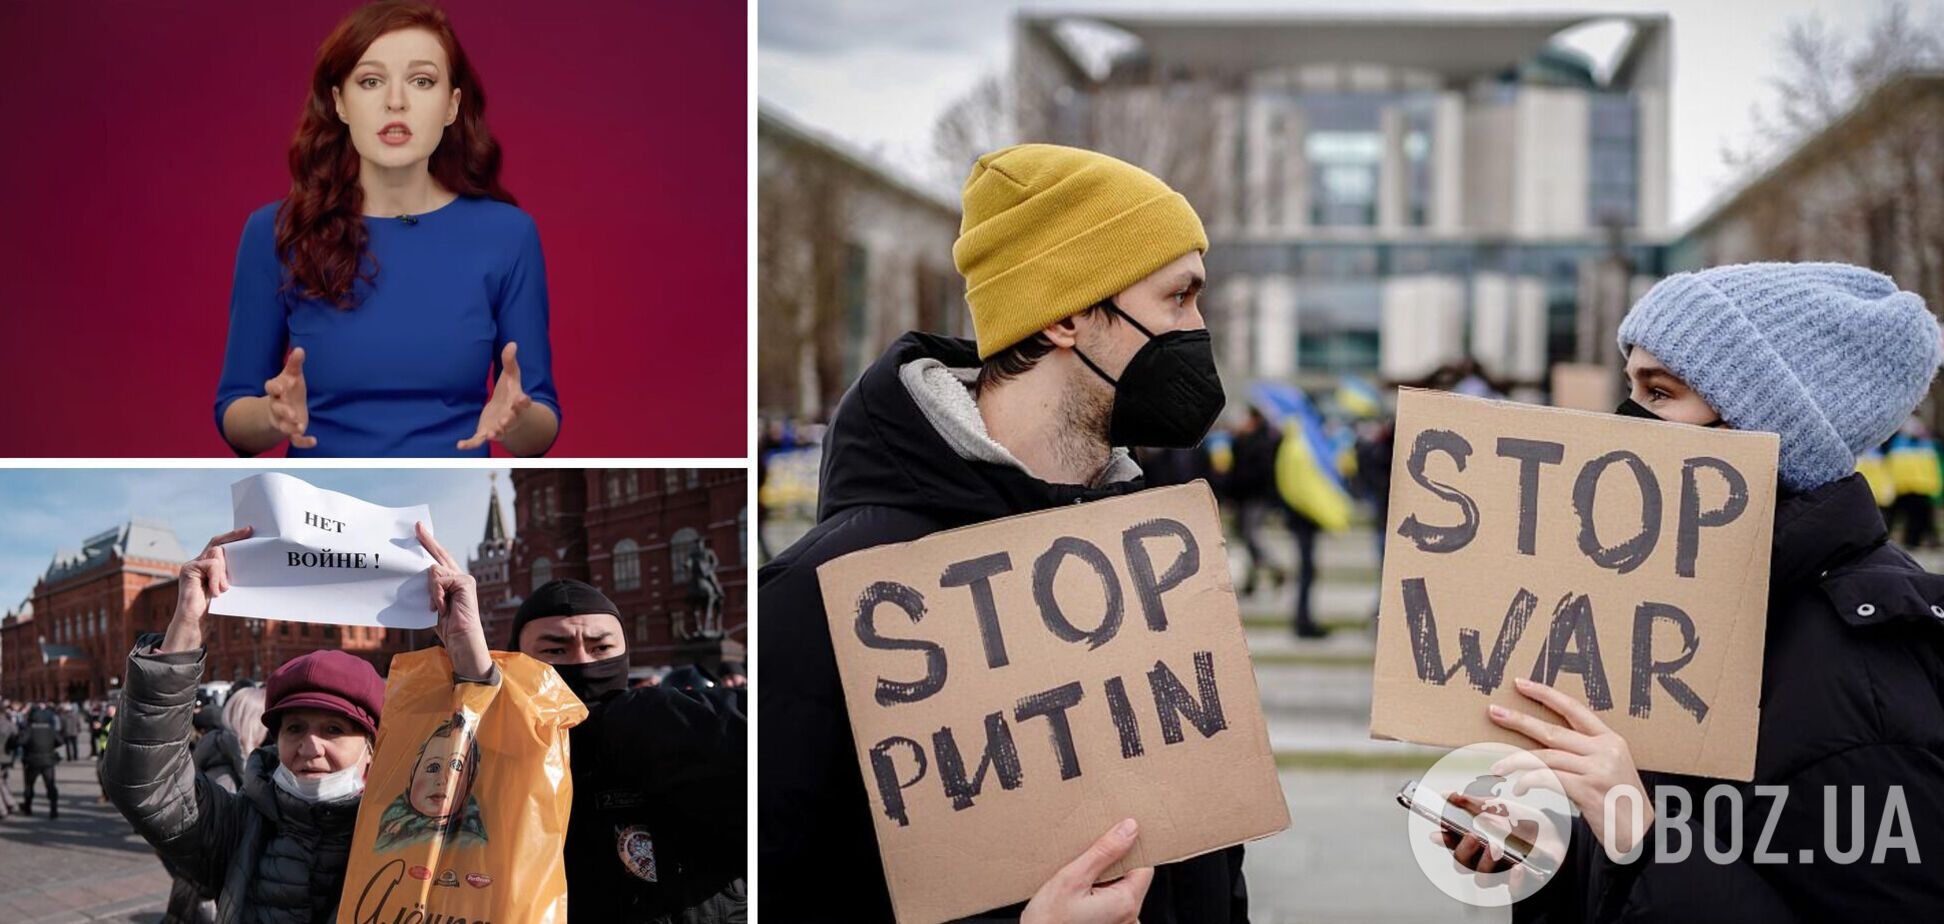 'Для Путина люди – пушечное мясо': у Навального призвали россиян выйти 8 марта на митинги против войны. Видео